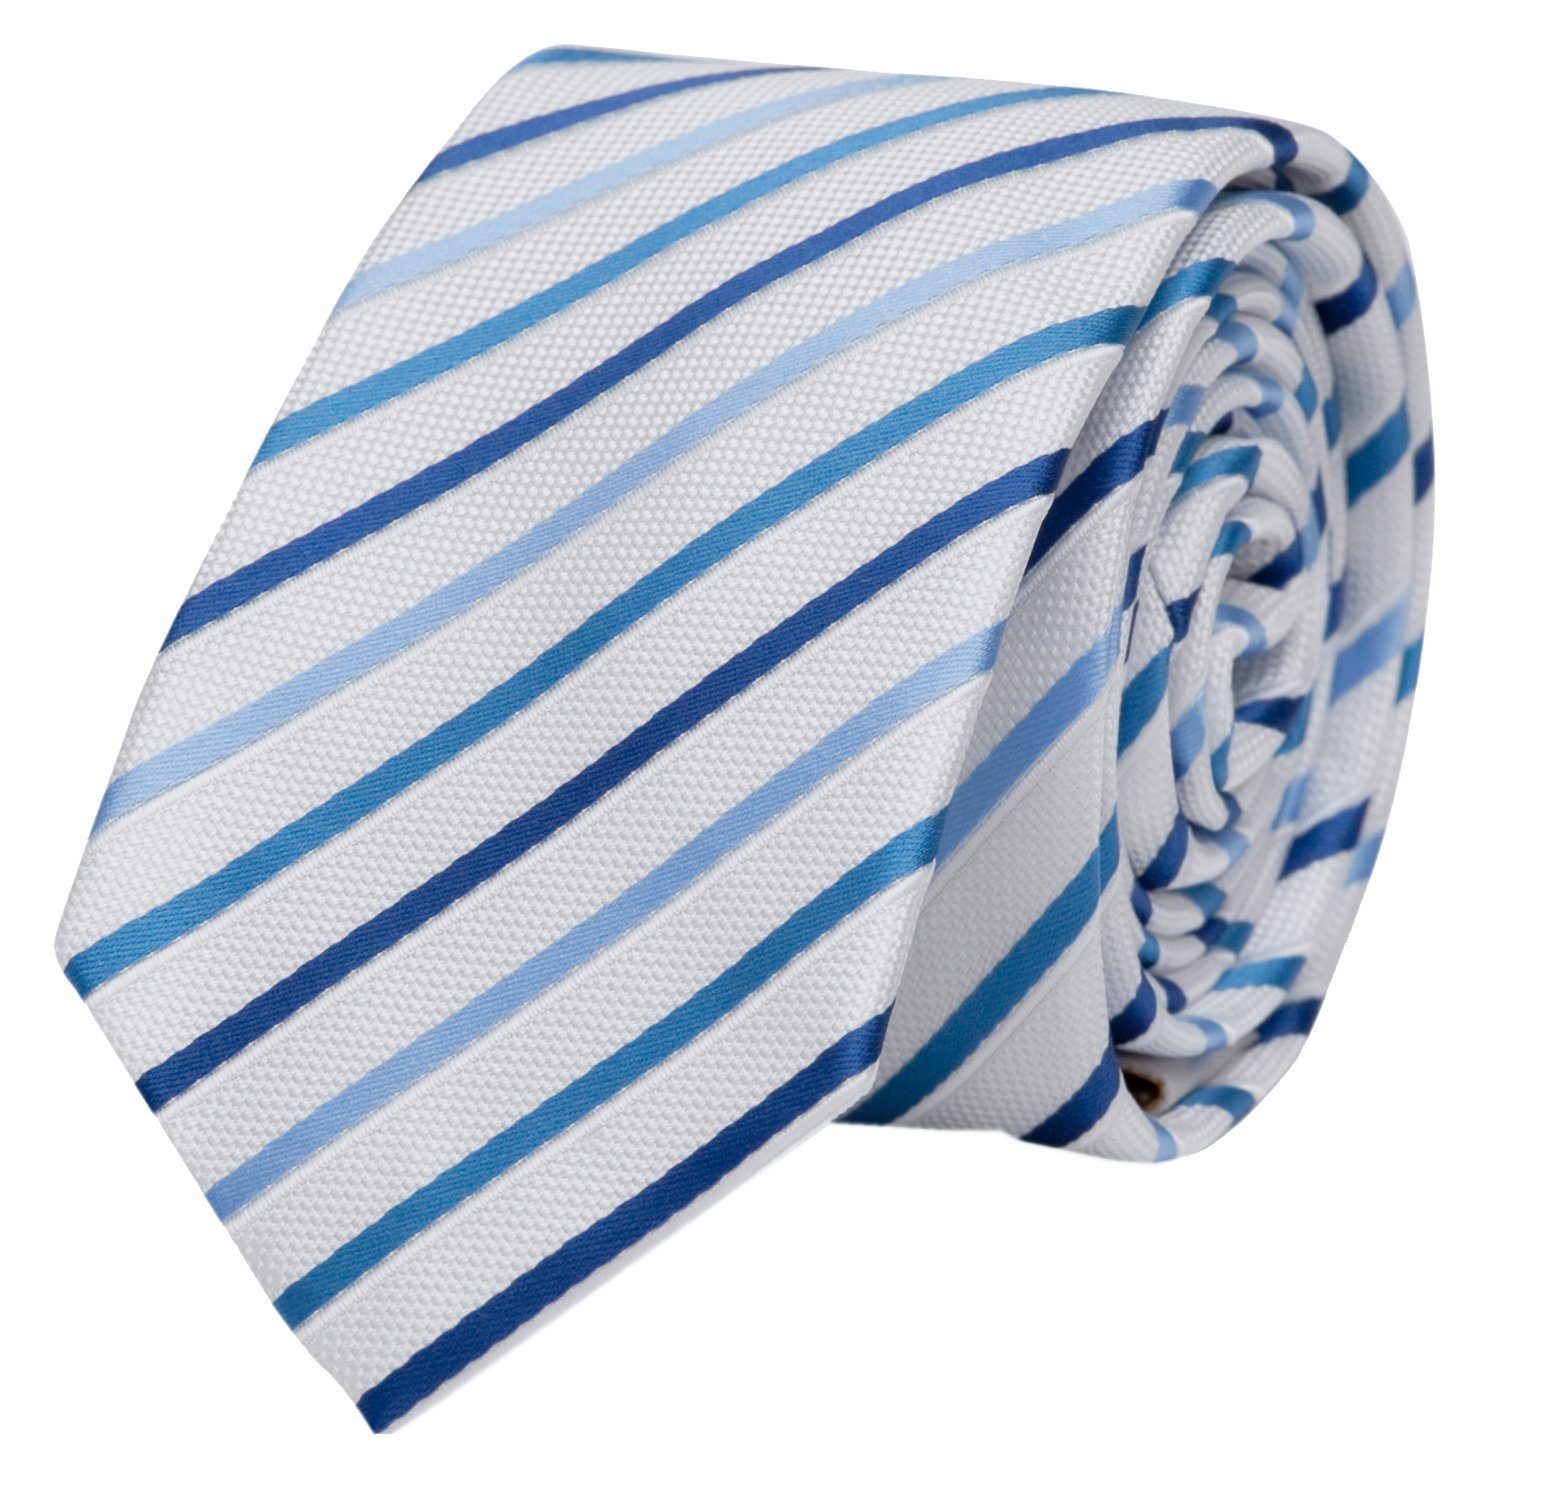 Fabio Farini Krawatte Herren Krawatte Weiß - verschiedene Weiße Männer Schlips in 8cm (Gestreift) Breit (8cm), Weiß Blau - Moon Man/Cambridge Blue/True Navy